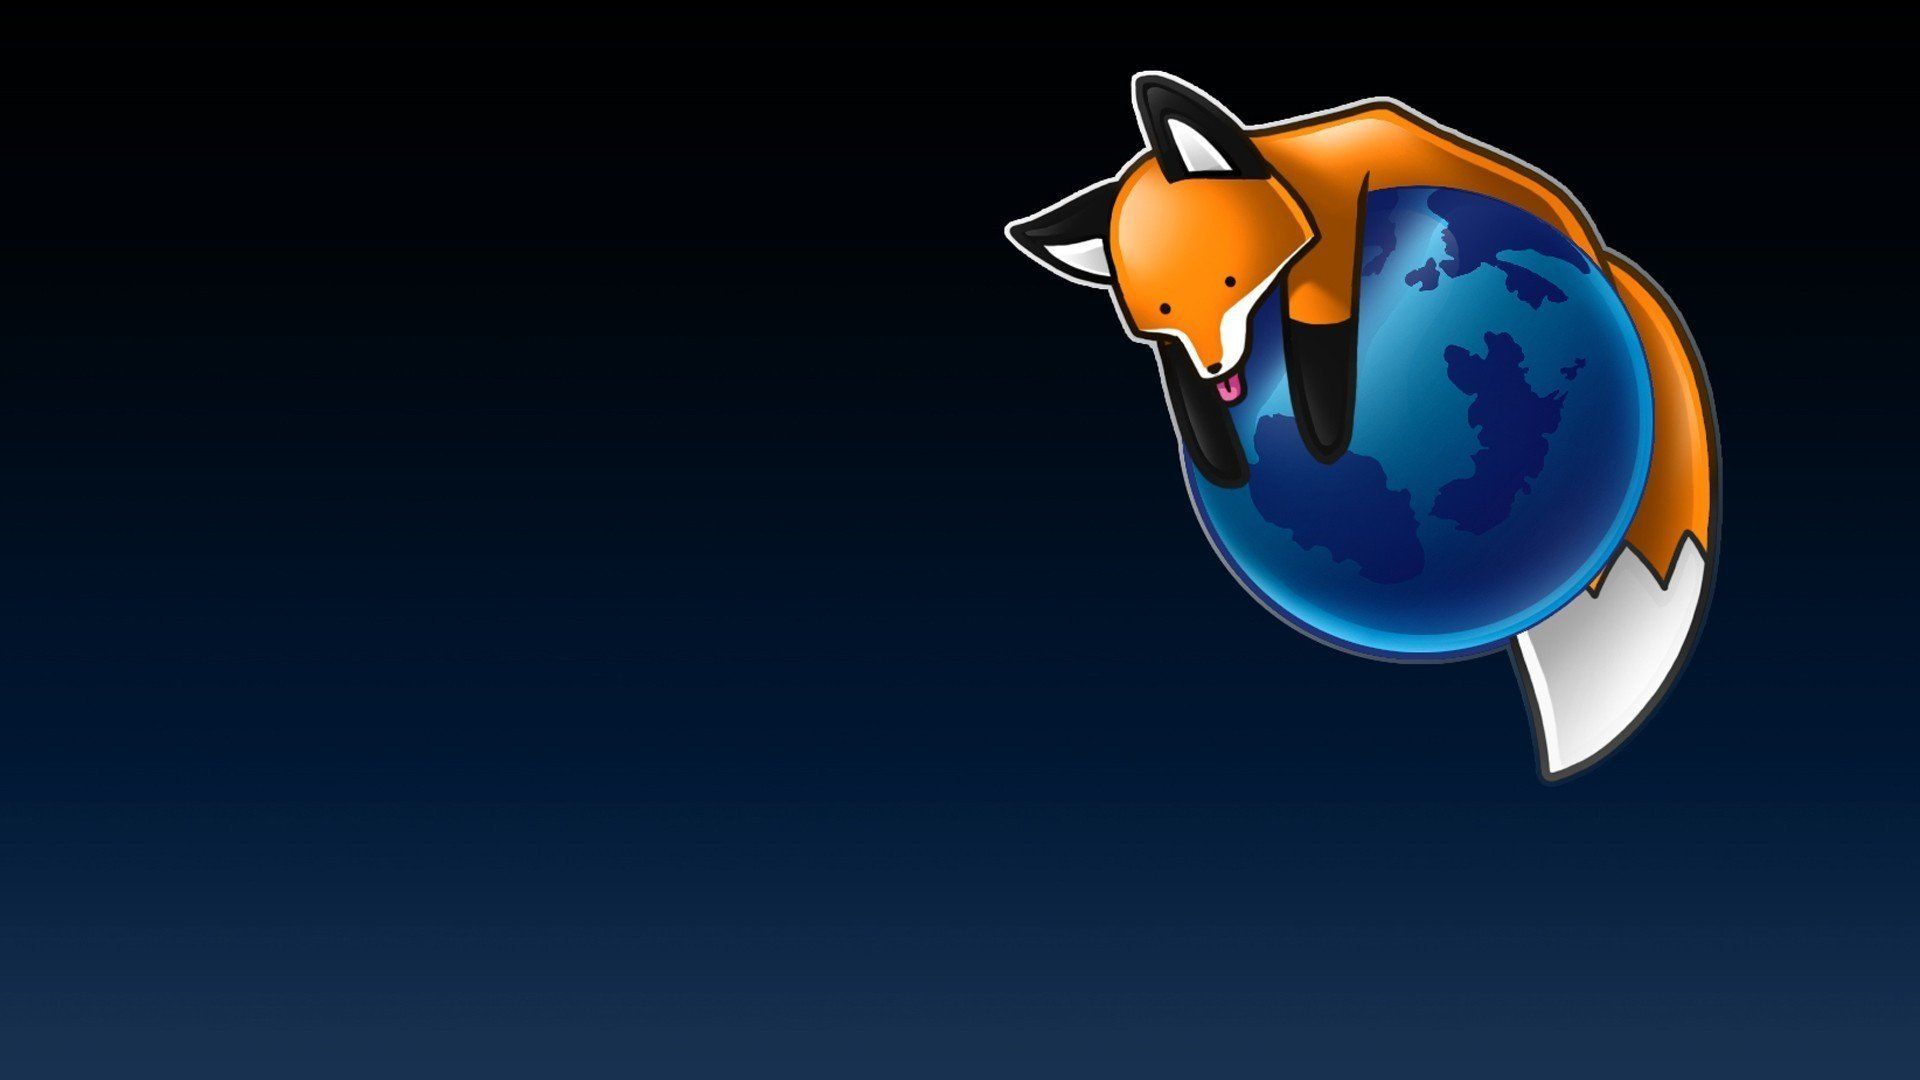 Firefox đang gặp khủng hoảng lớn, sa thải một lượng lớn nhân viên